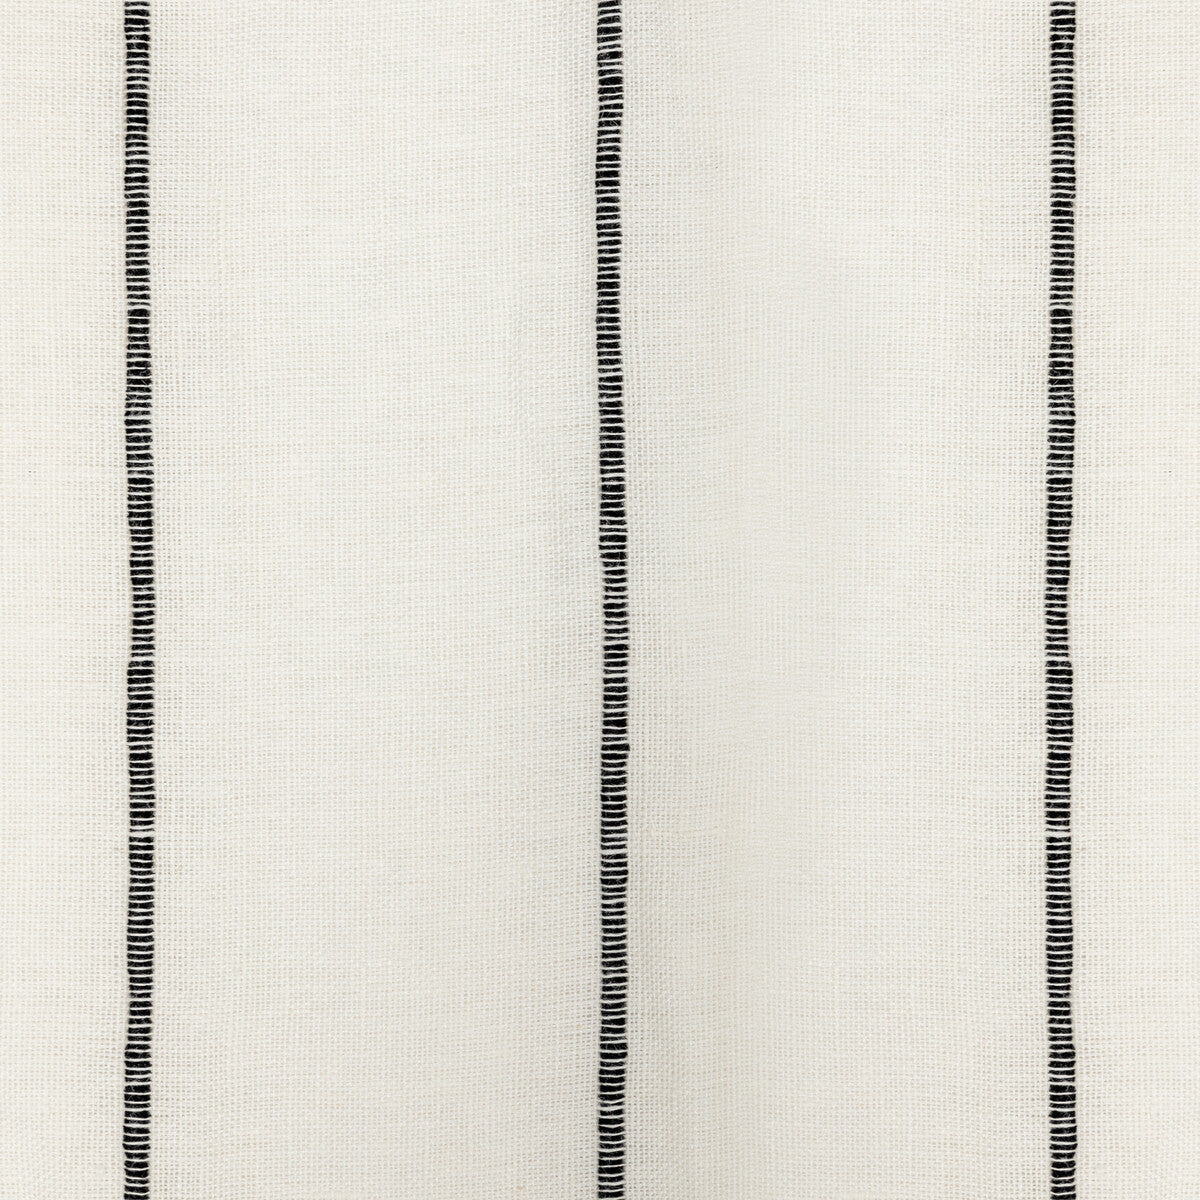 Kravet Design fabric in 4926-81 color - pattern 4926.81.0 - by Kravet Design